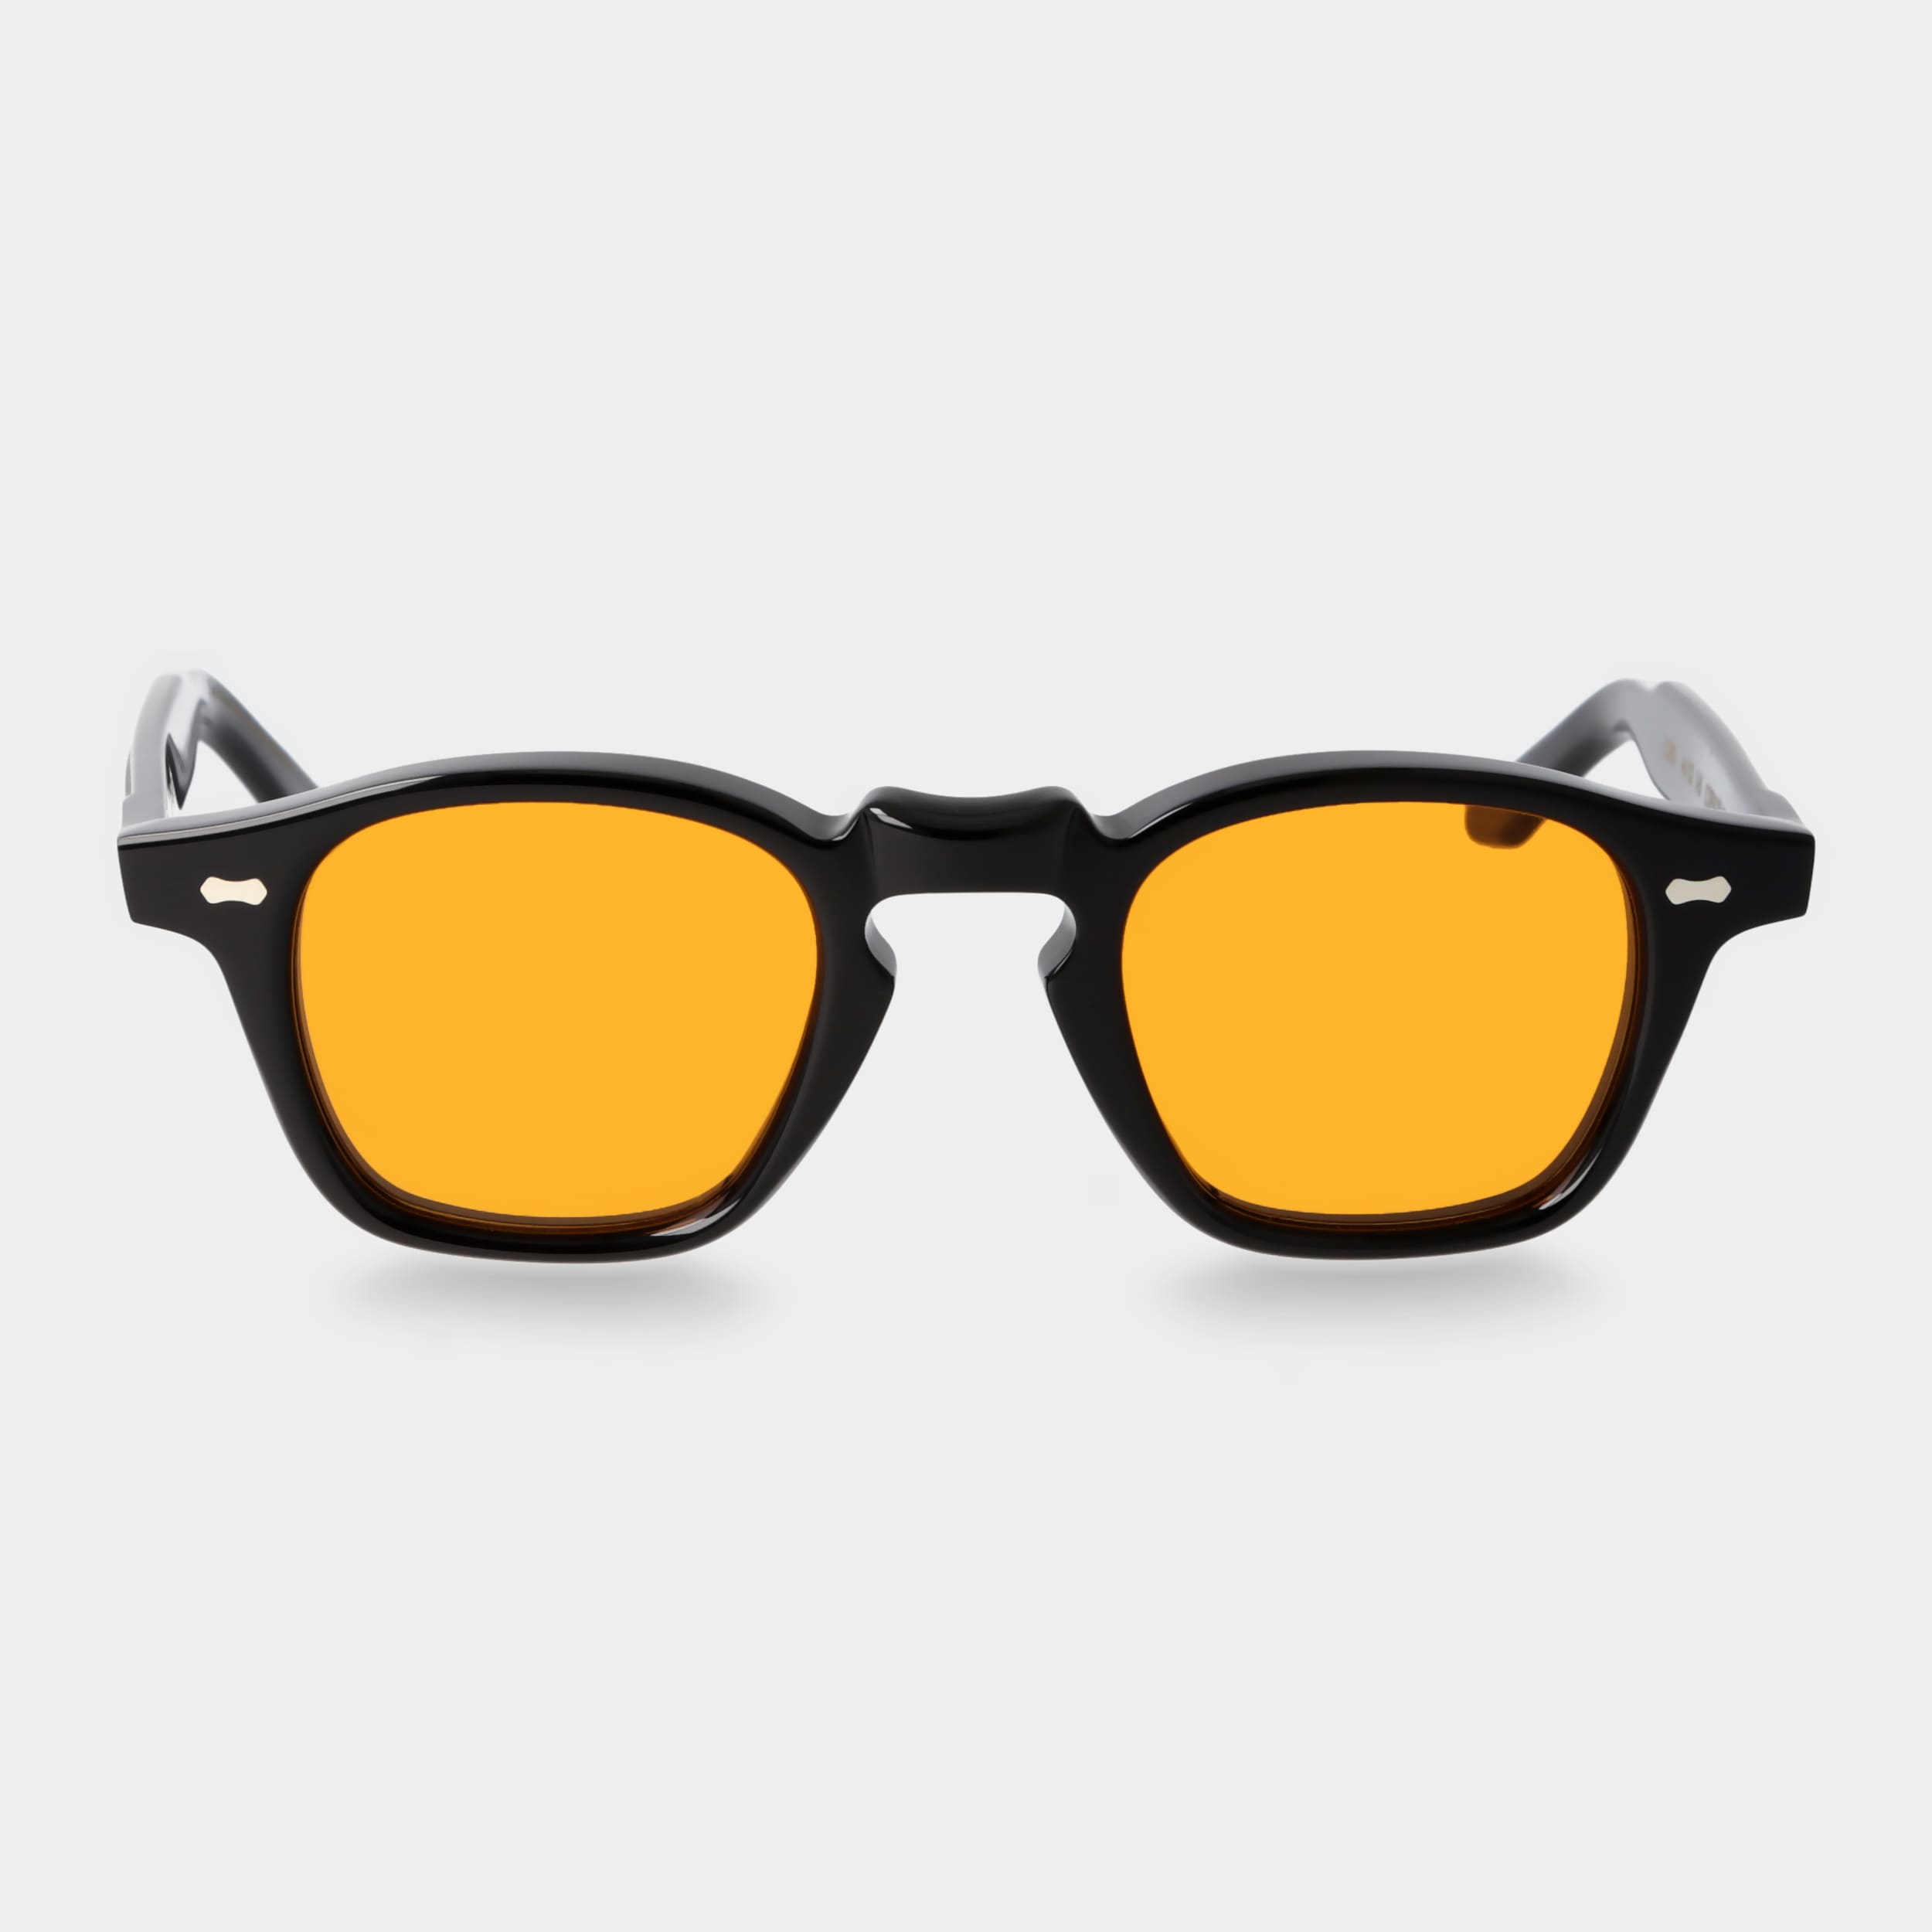 orangefarbenen Schwarze Sonnenbrille Gläsern: Eyewear | TBD Cord mit